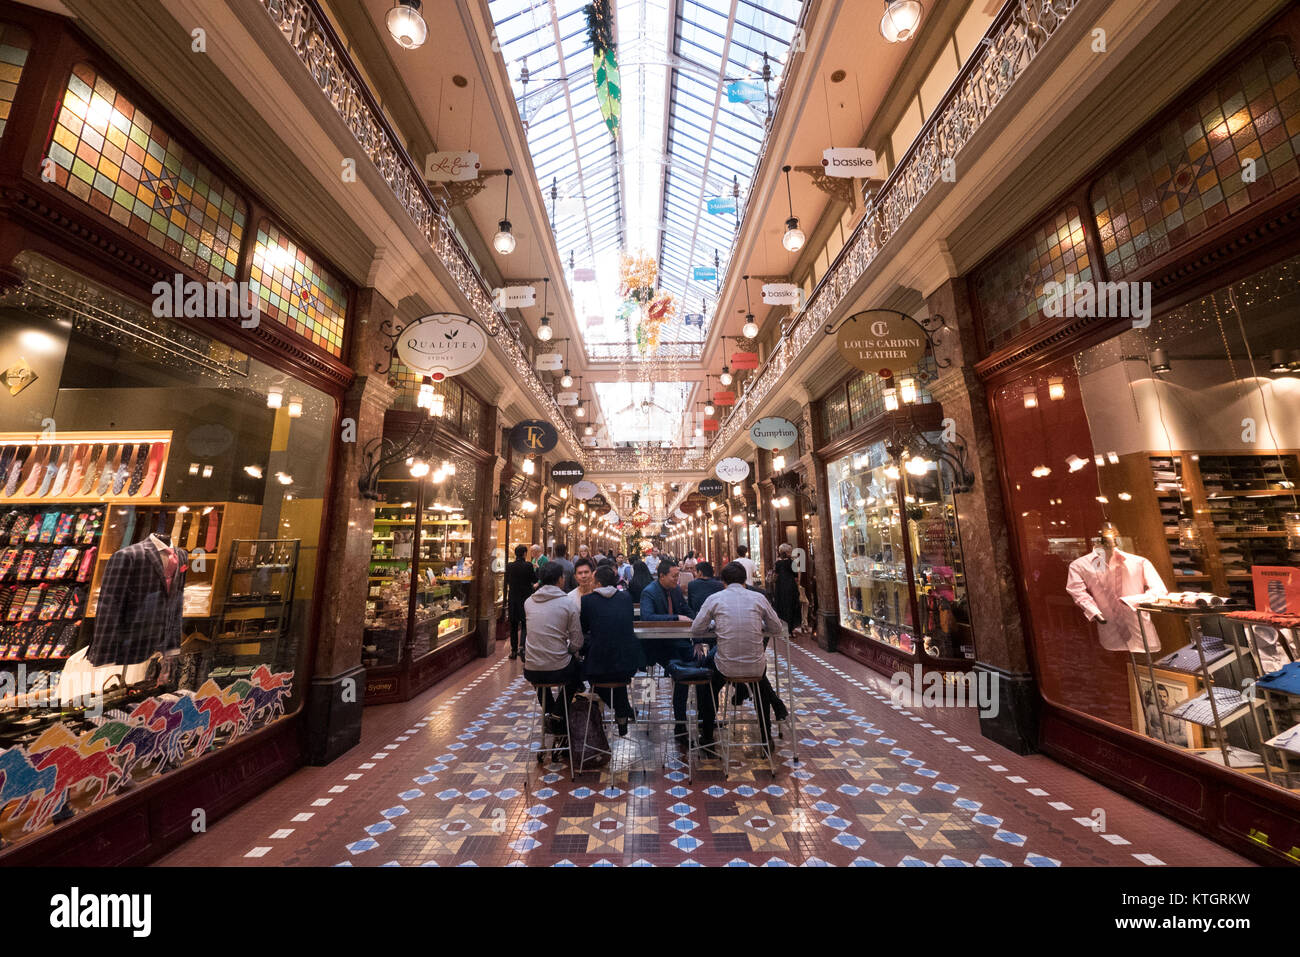 Strand arcade es un histórico centro comercial en Sydney Foto de stock